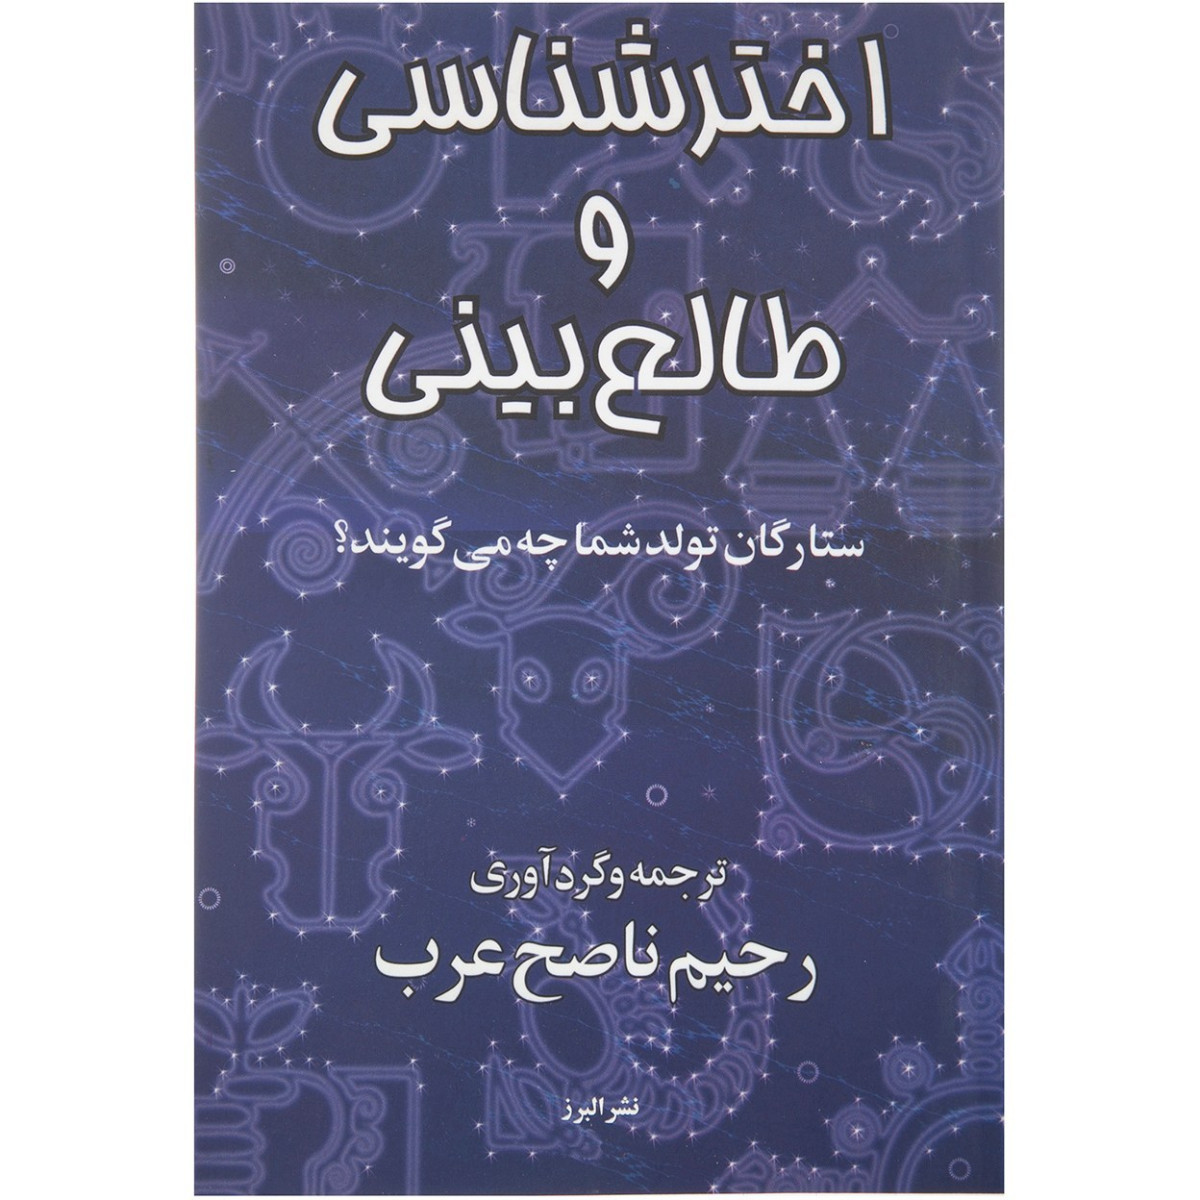 اخترشناسی و طالع بینی/رحیم ناصح عرب/نشرالبرز